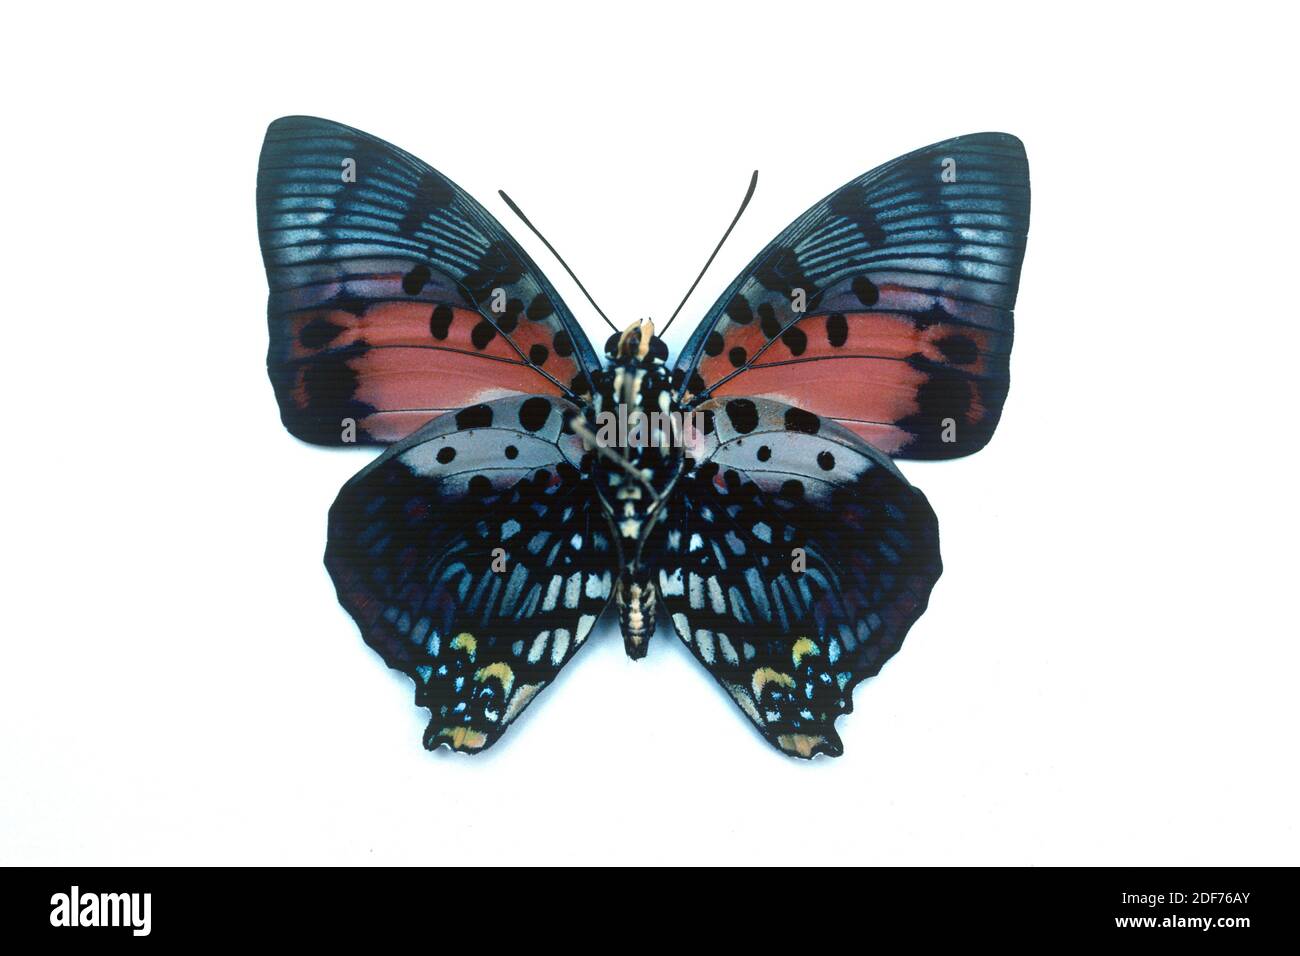 charaxes rojo brillante (Charaxes zingha) es una mariposa nativa de África central. Macho, superficie ventral. Foto de stock